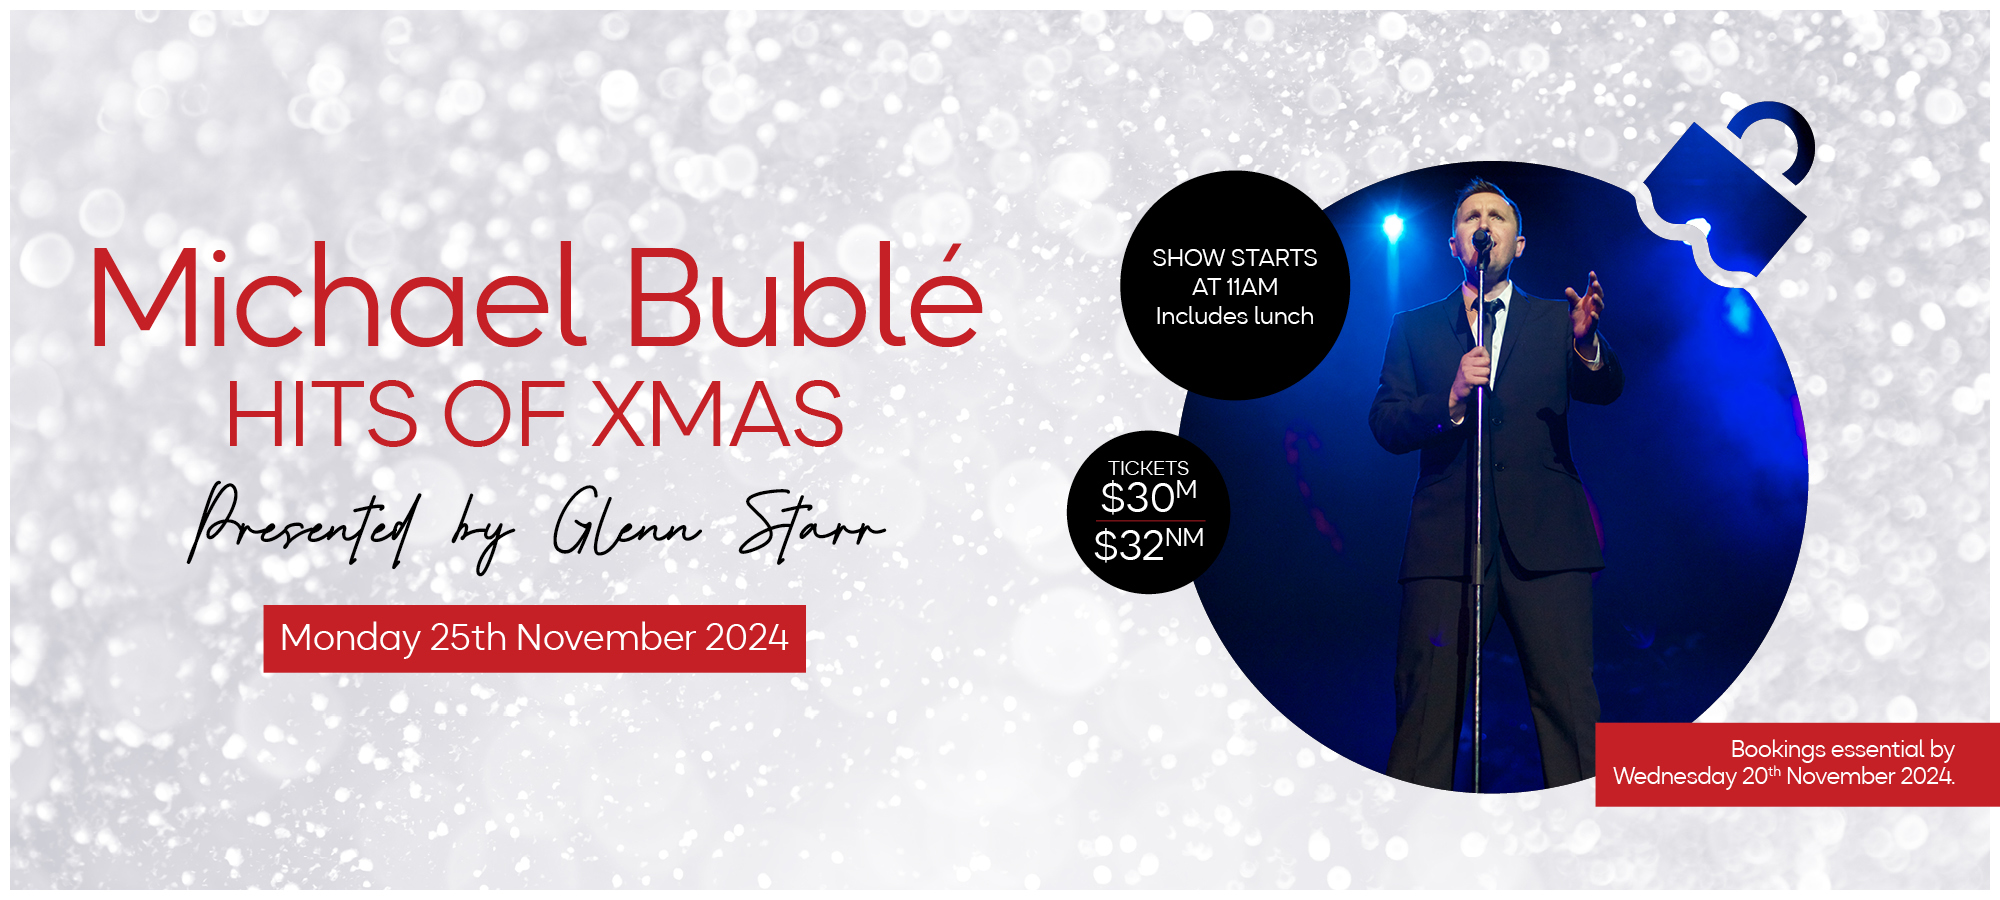 Michael Bublé – Hits of Xmas Starring Glenn Starr